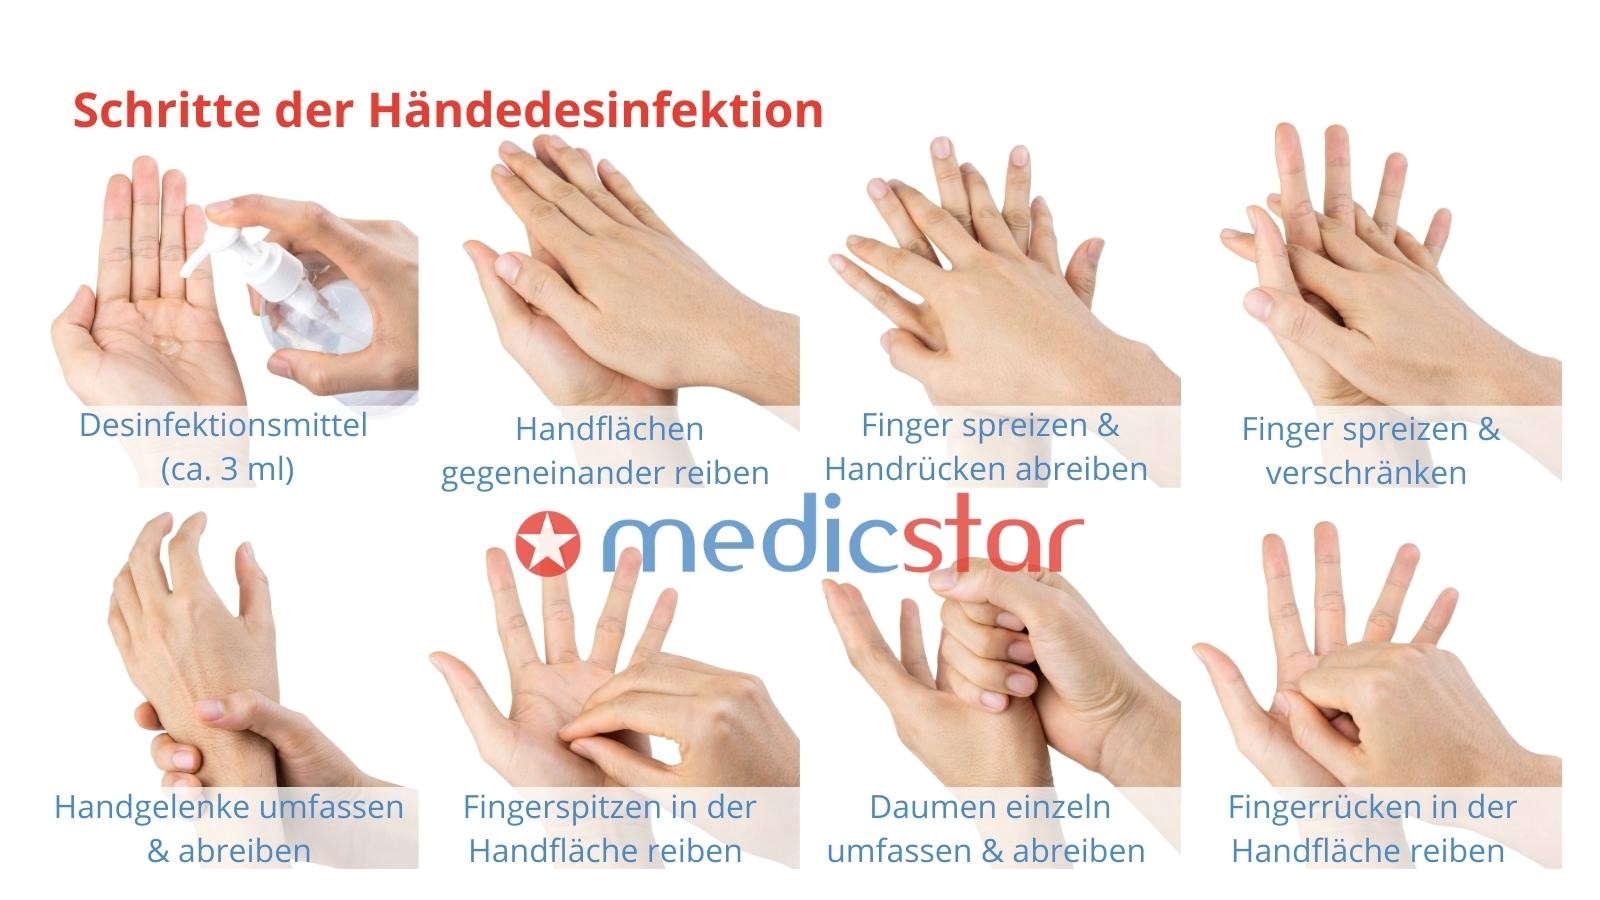 Schritte der Händedesinfektion im Überblick